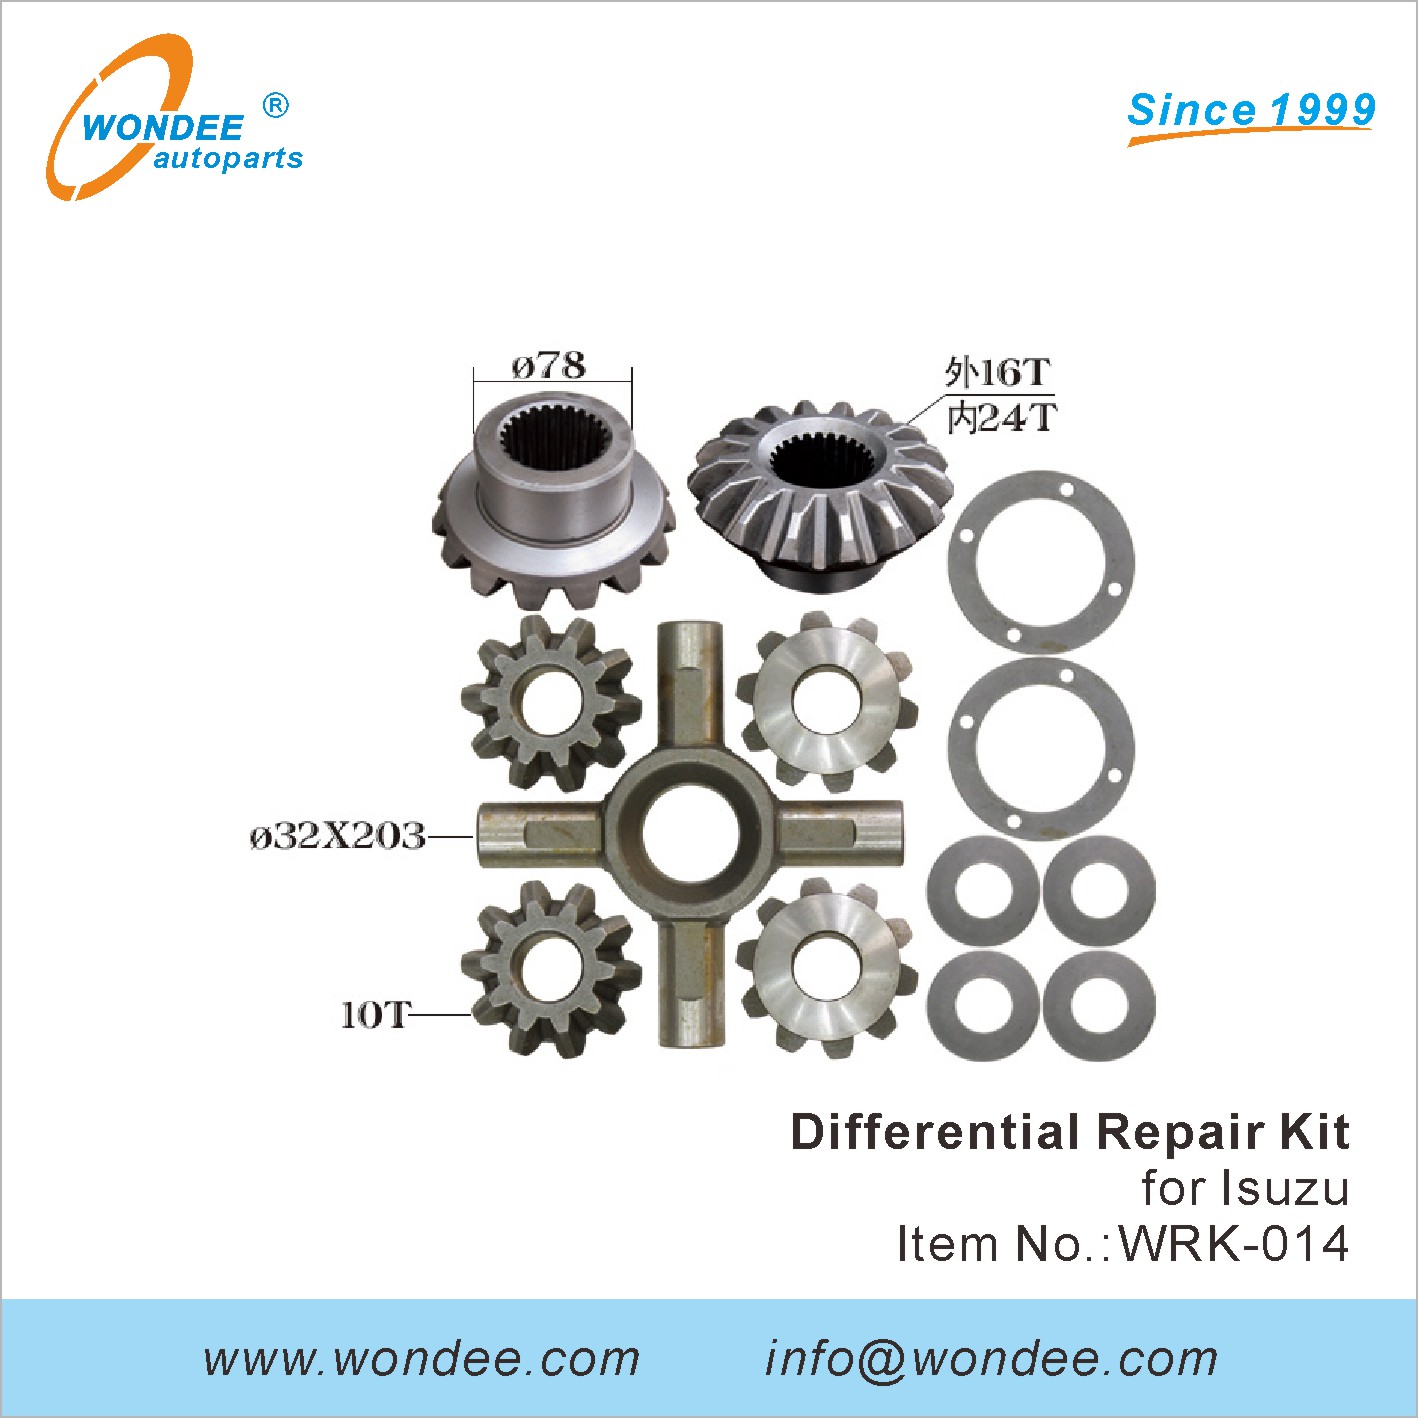 WONDEE differential repair kit (14)